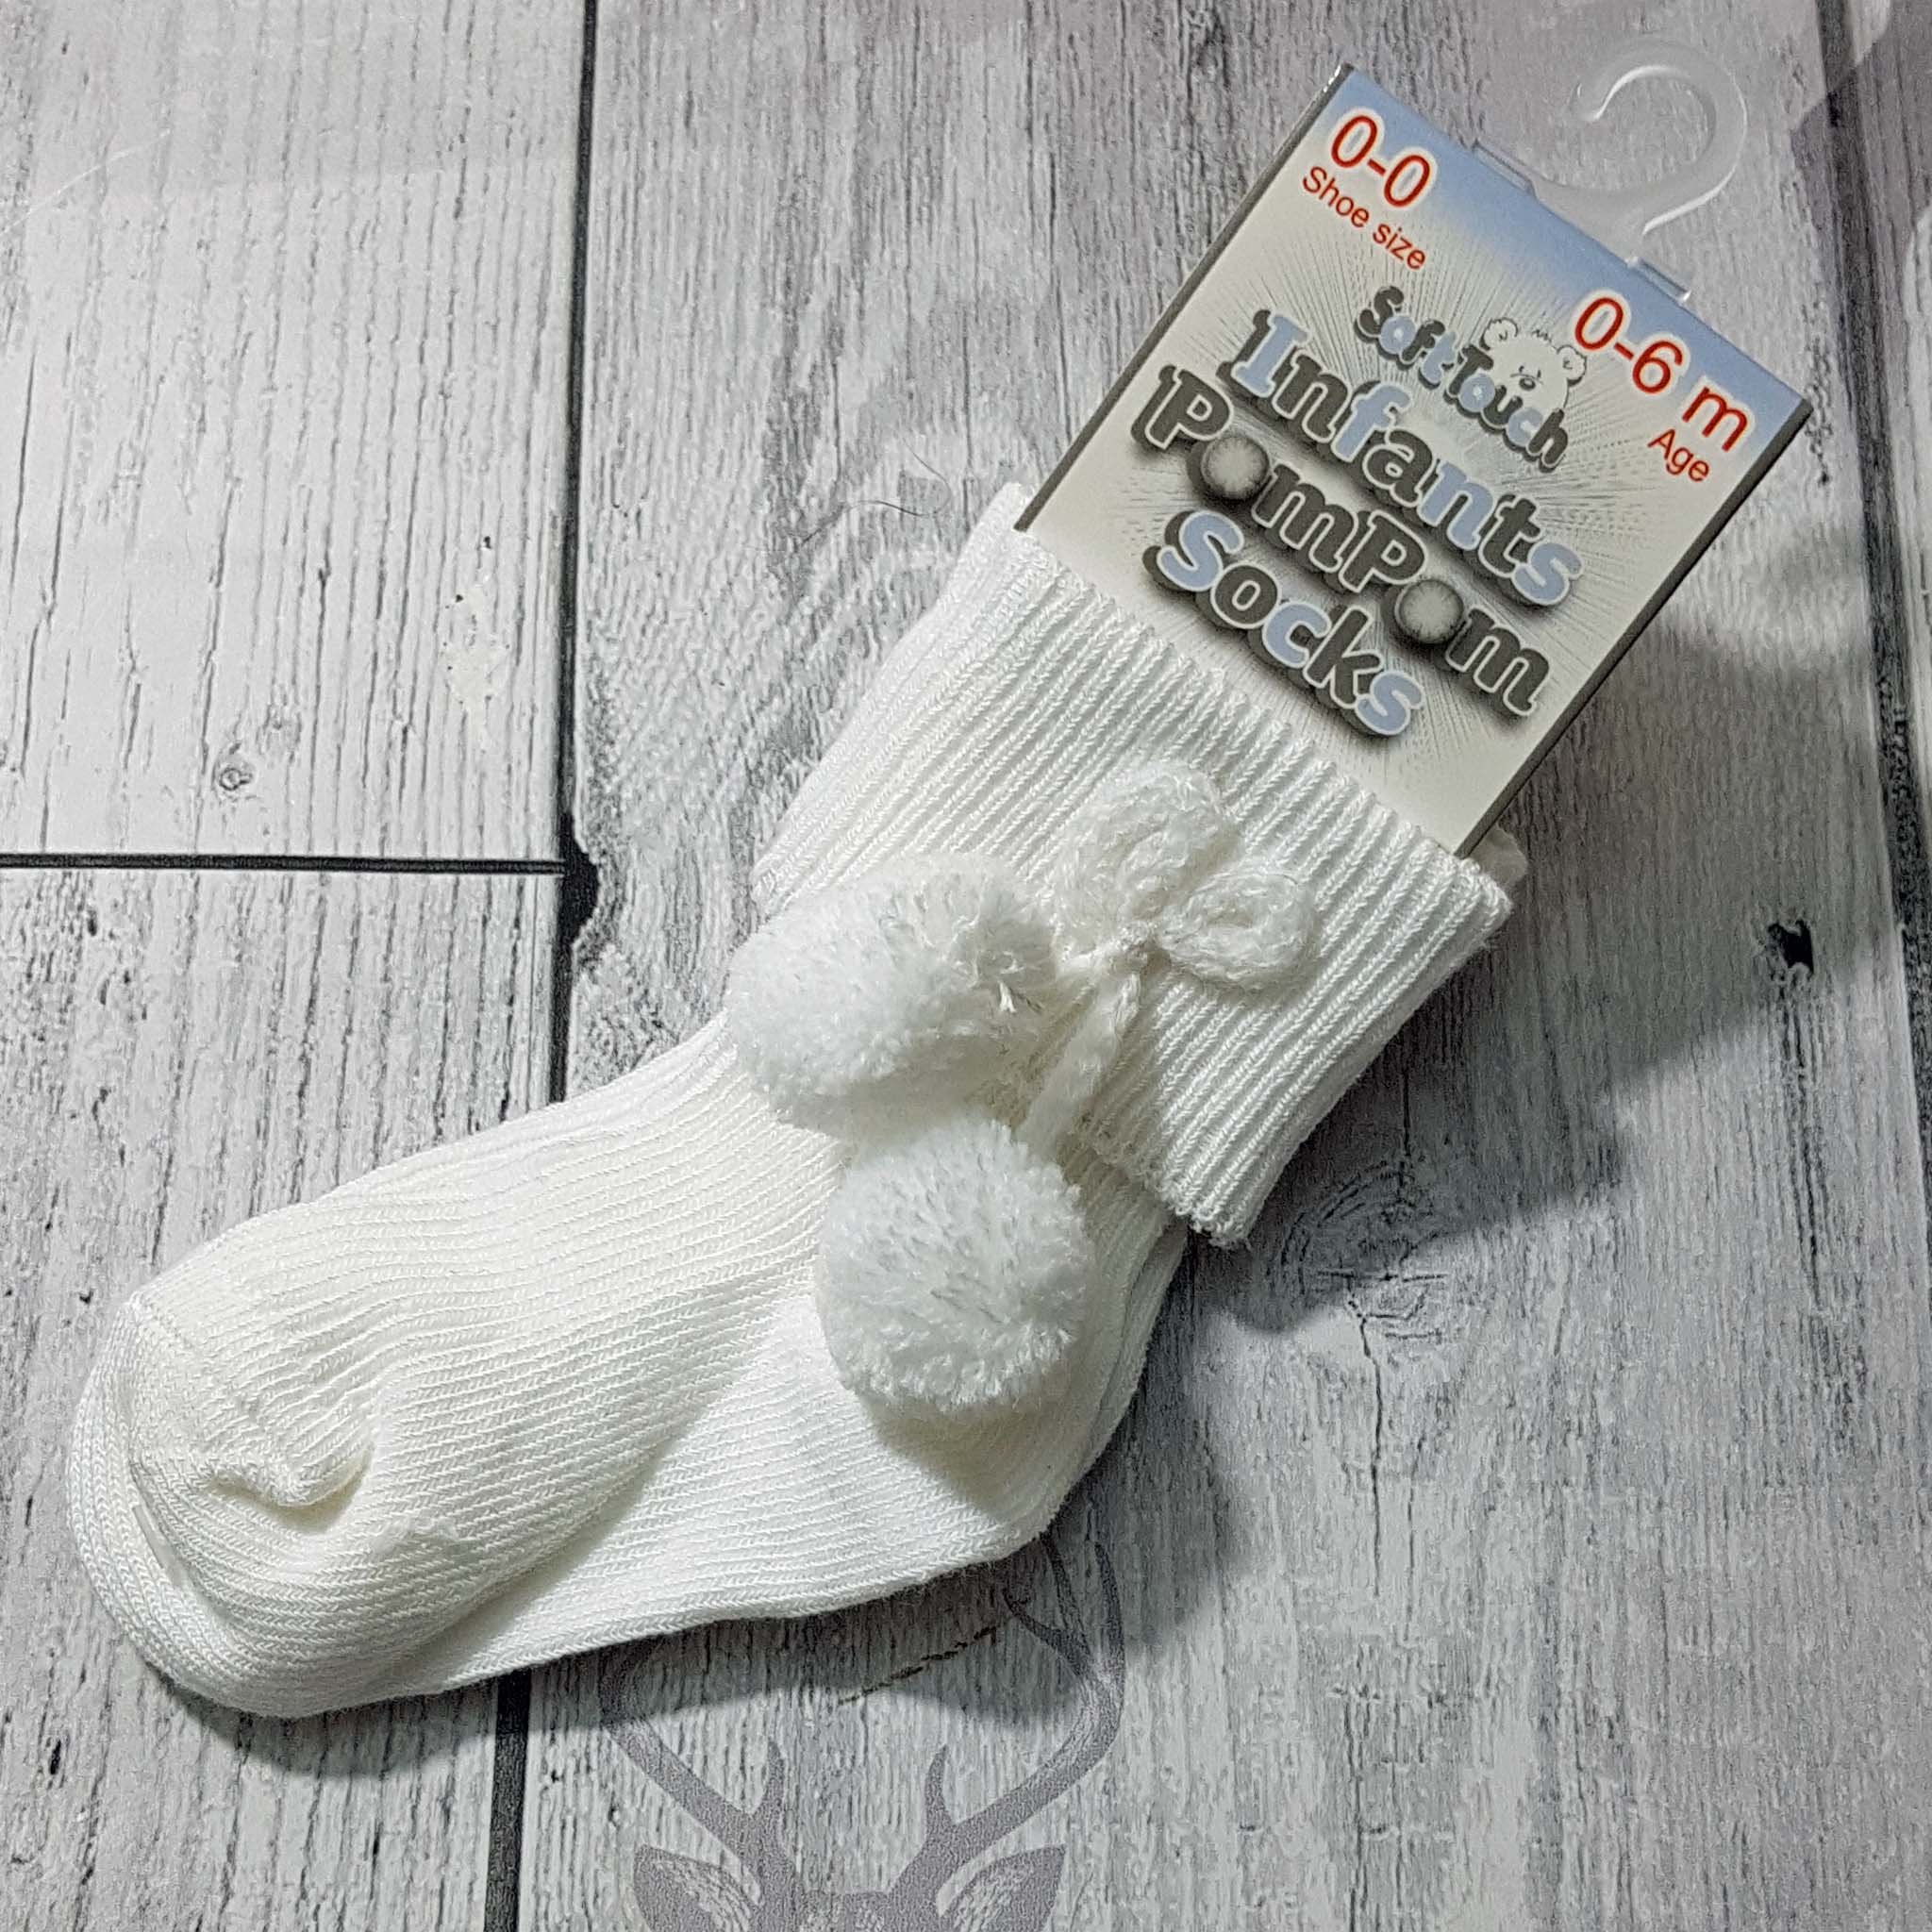 unisex baby socks white with pom poms